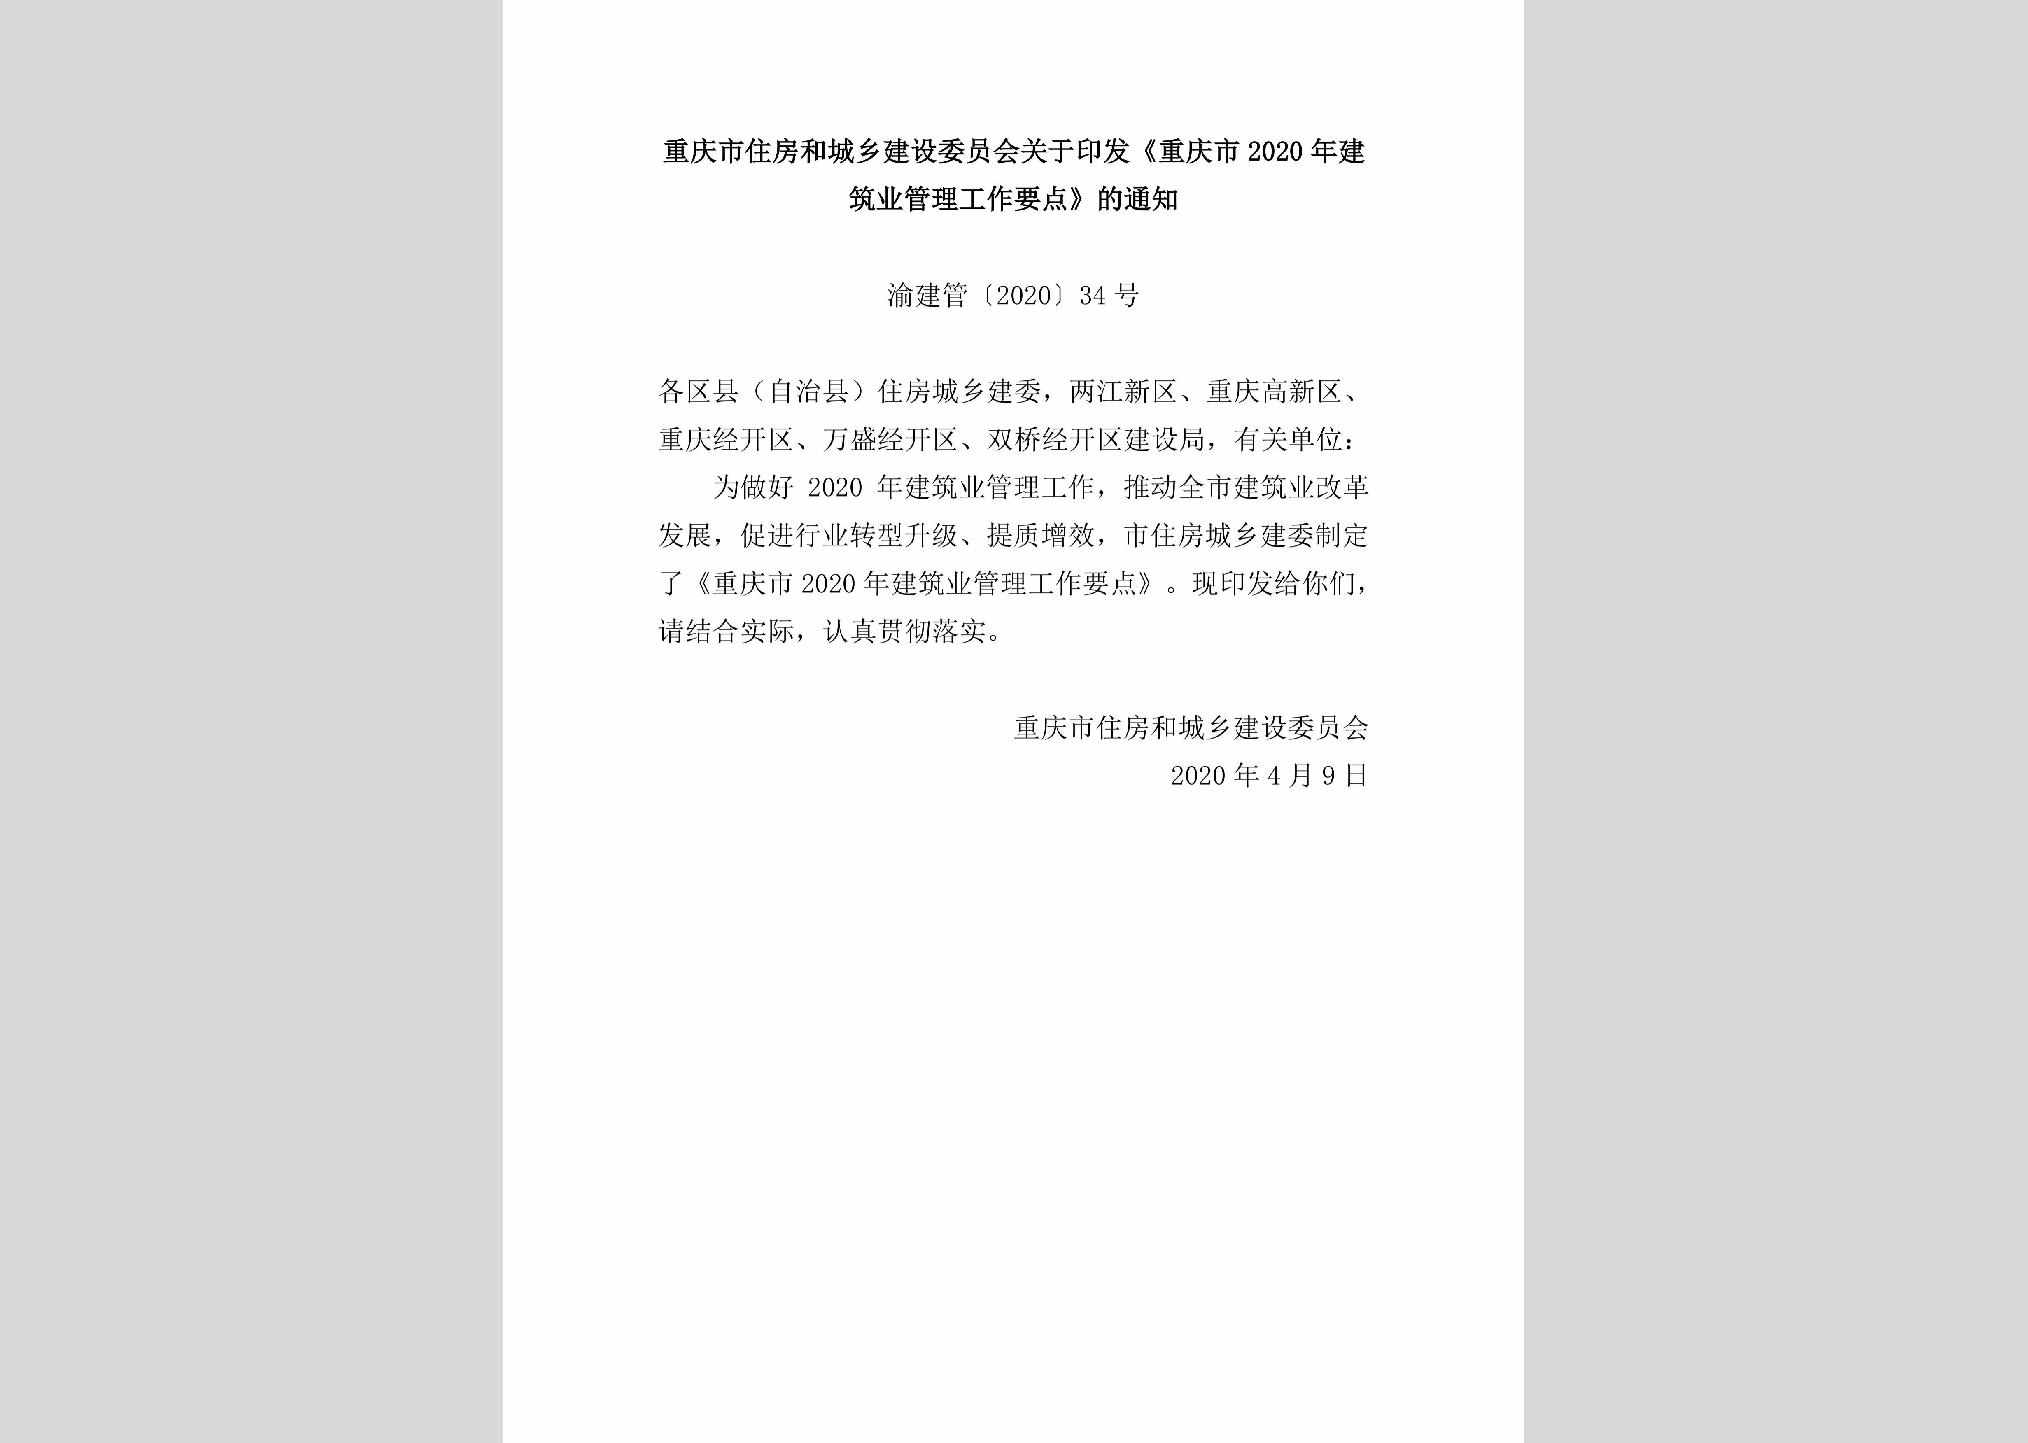 渝建管[2020]34号：重庆市住房和城乡建设委员会关于印发《重庆市2020年建筑业管理工作要点》的通知